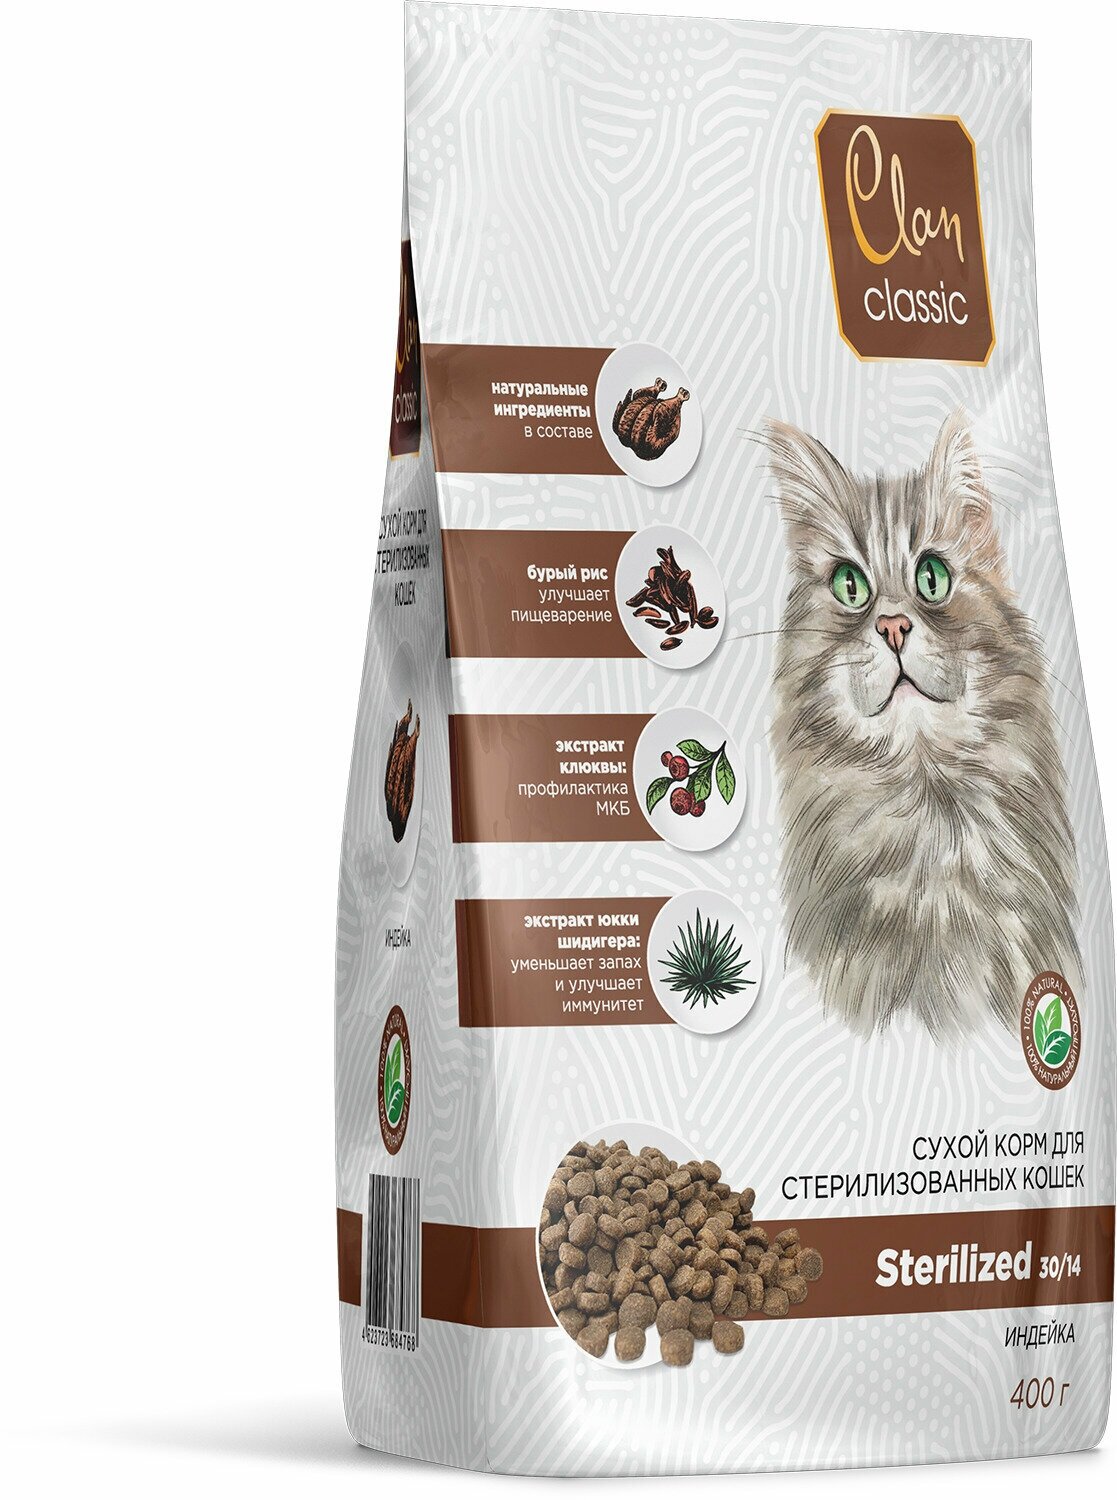 Clan Classic Sterilized. Сухой корм для кошек, Для кастрированных и стерилизованных С индейкой, 400 гр. - фотография № 1